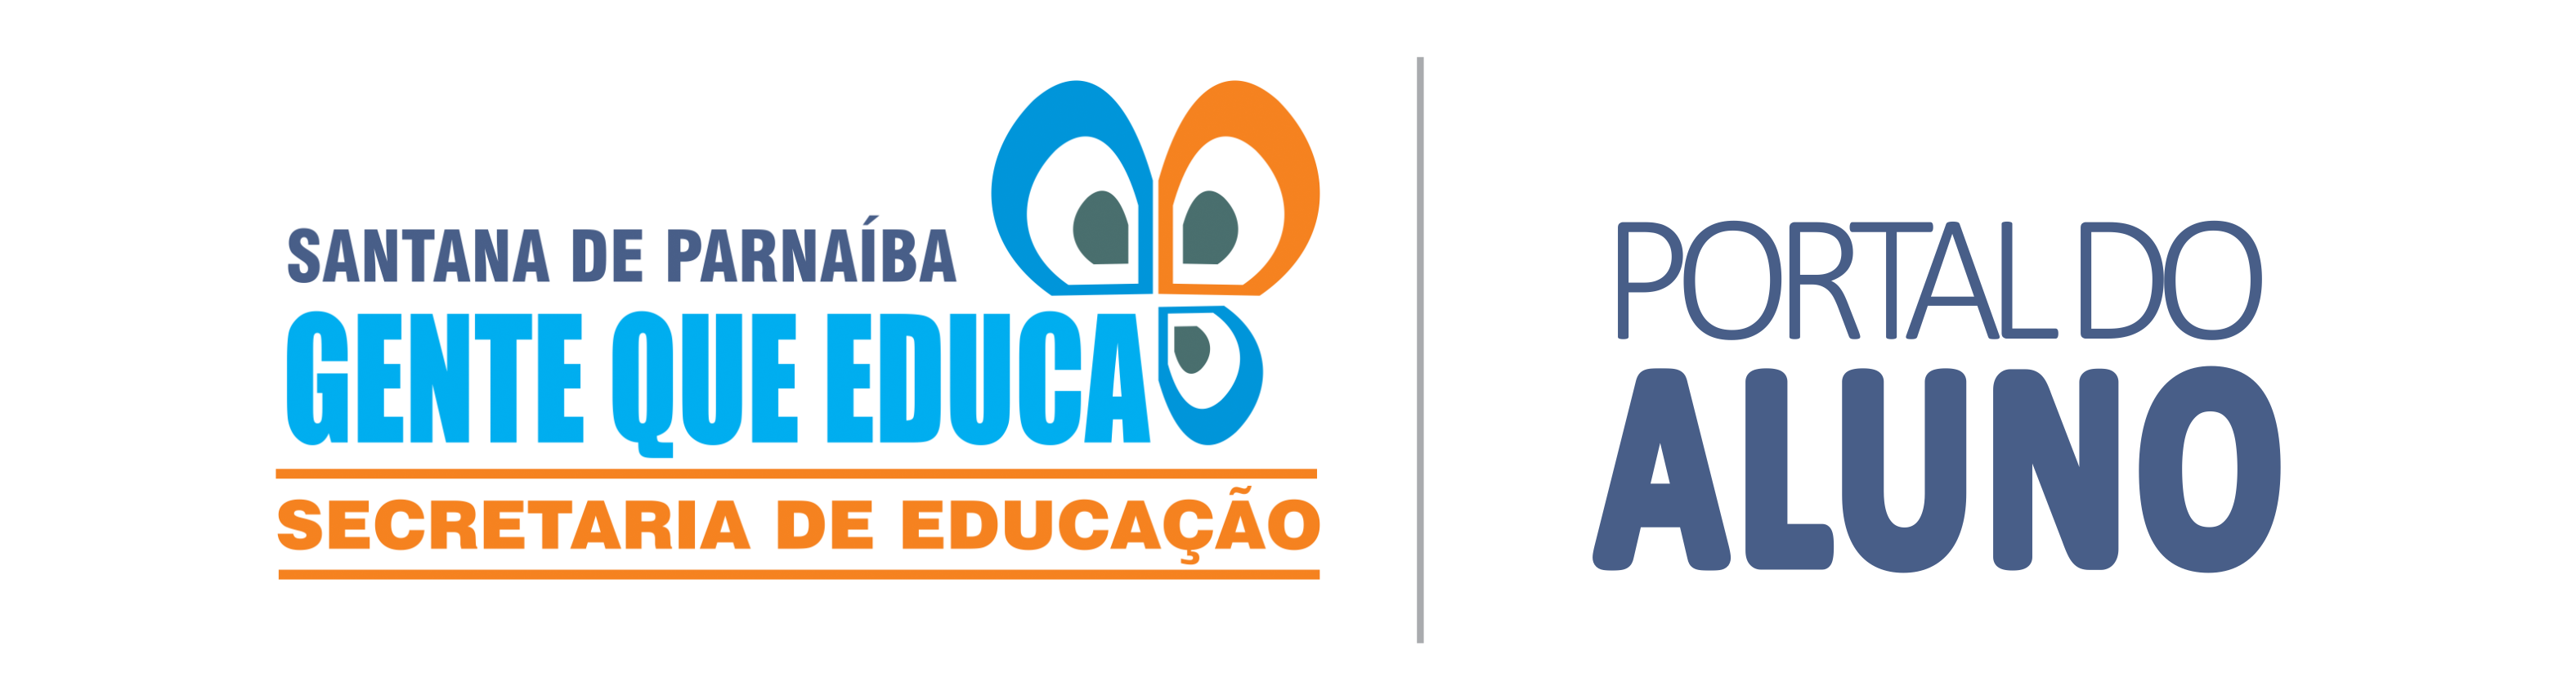 SisEduc - Portal do aluno logo